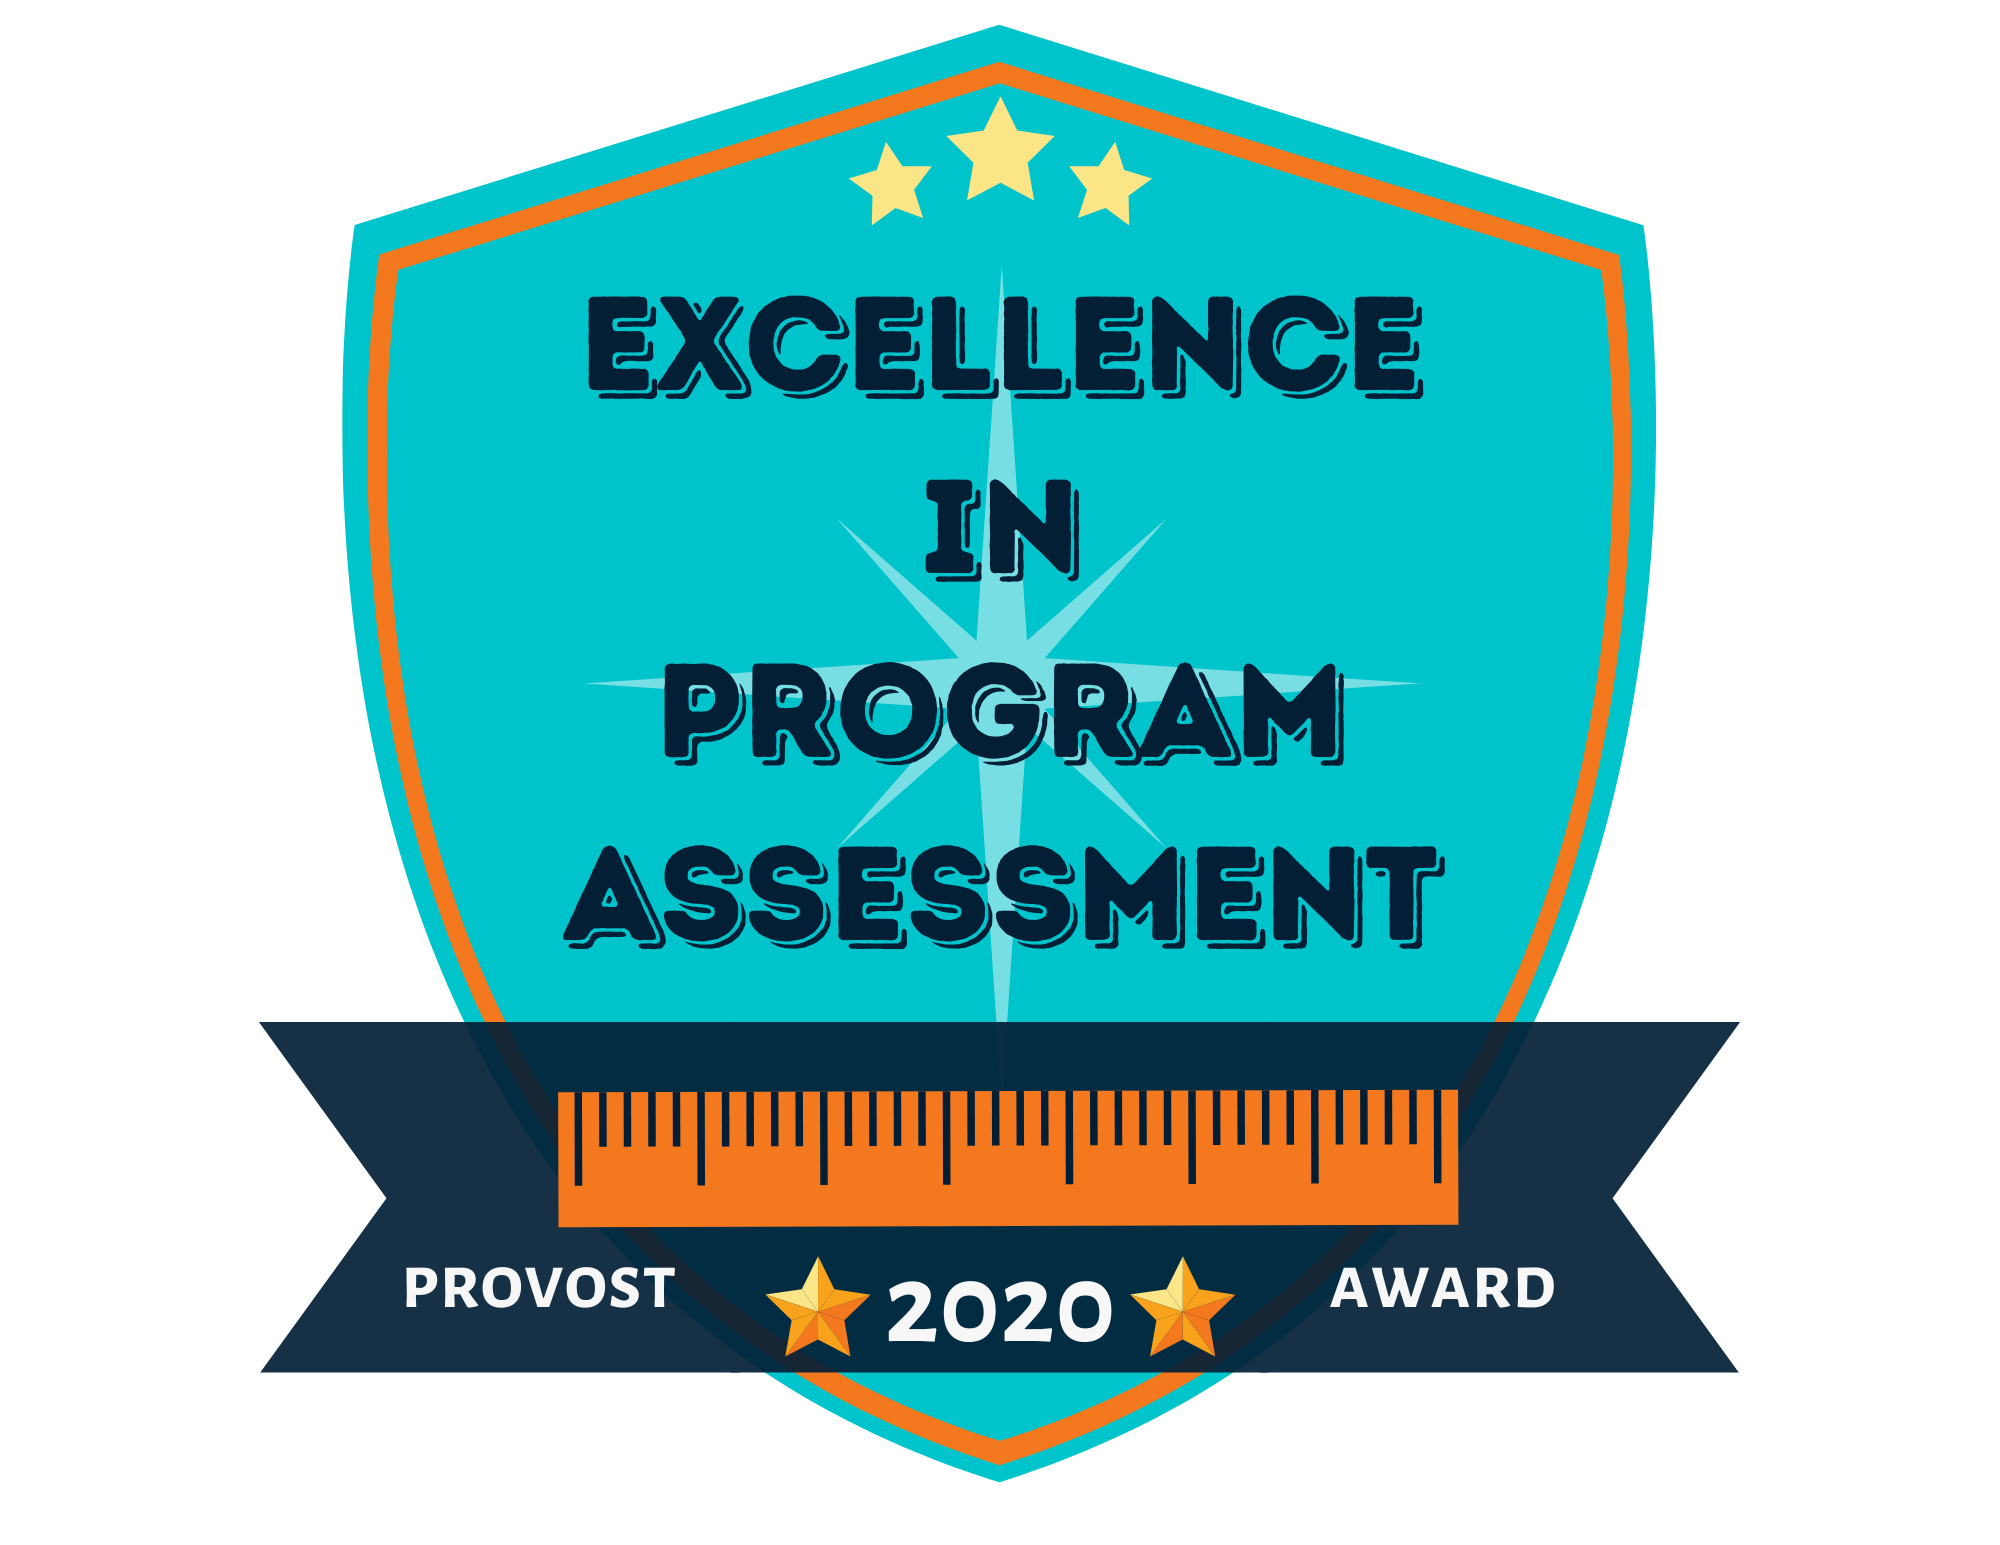 Excellence in Program Assessment 2020 Award Winner